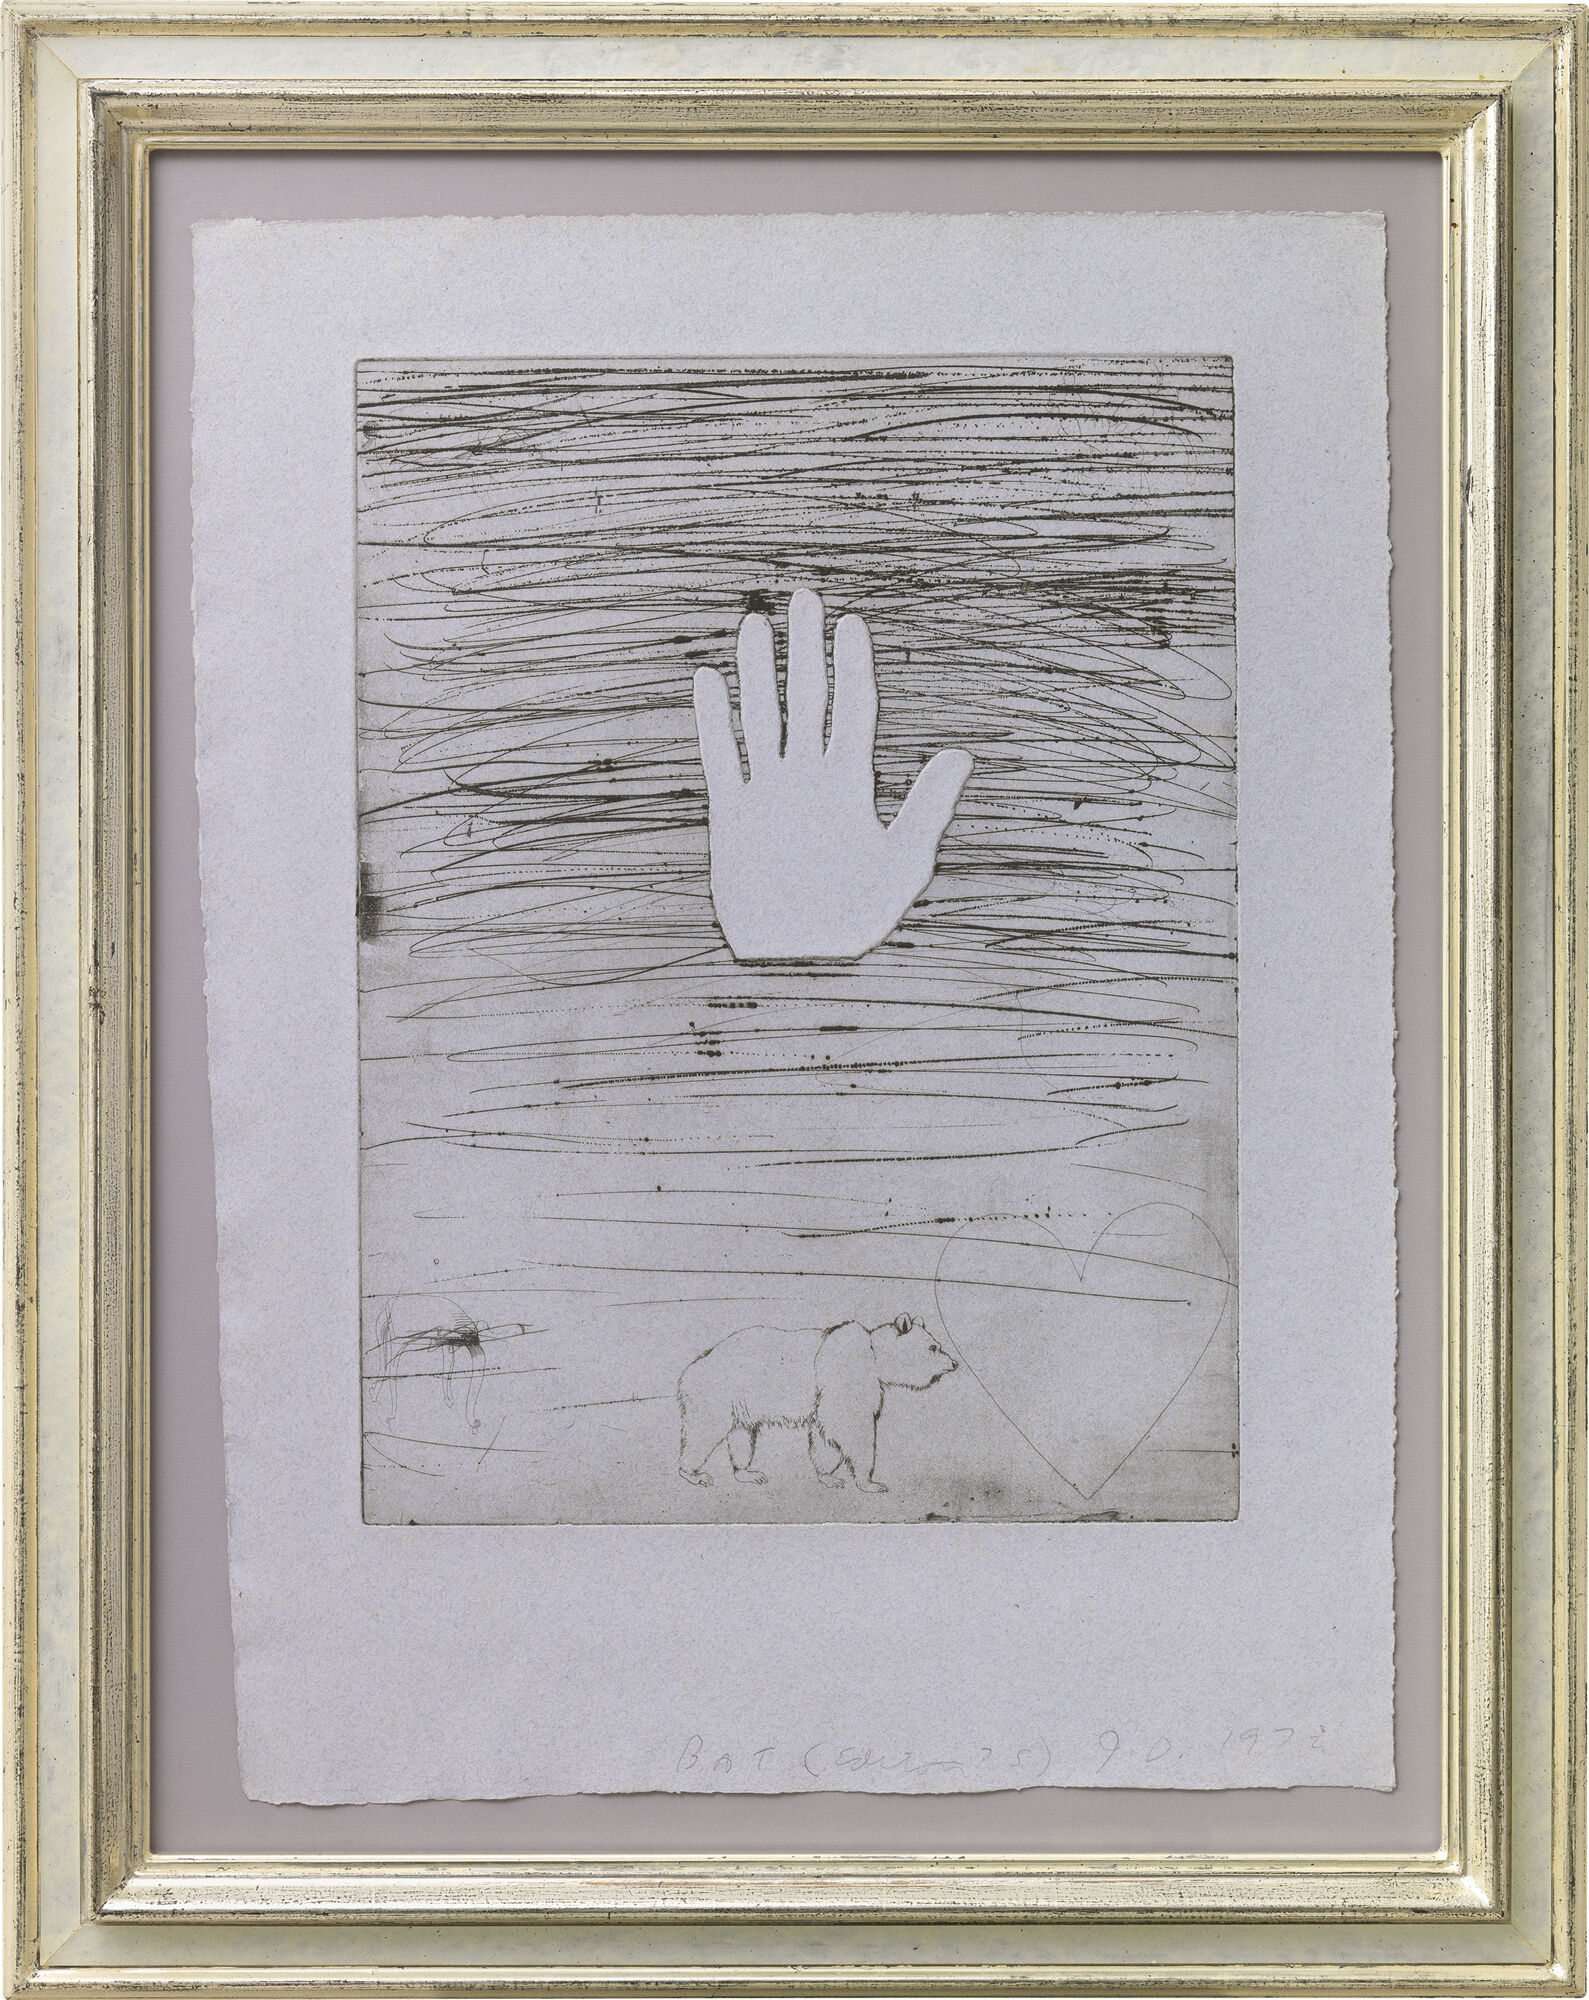 Billede "Hand" (1972) von Jim Dine